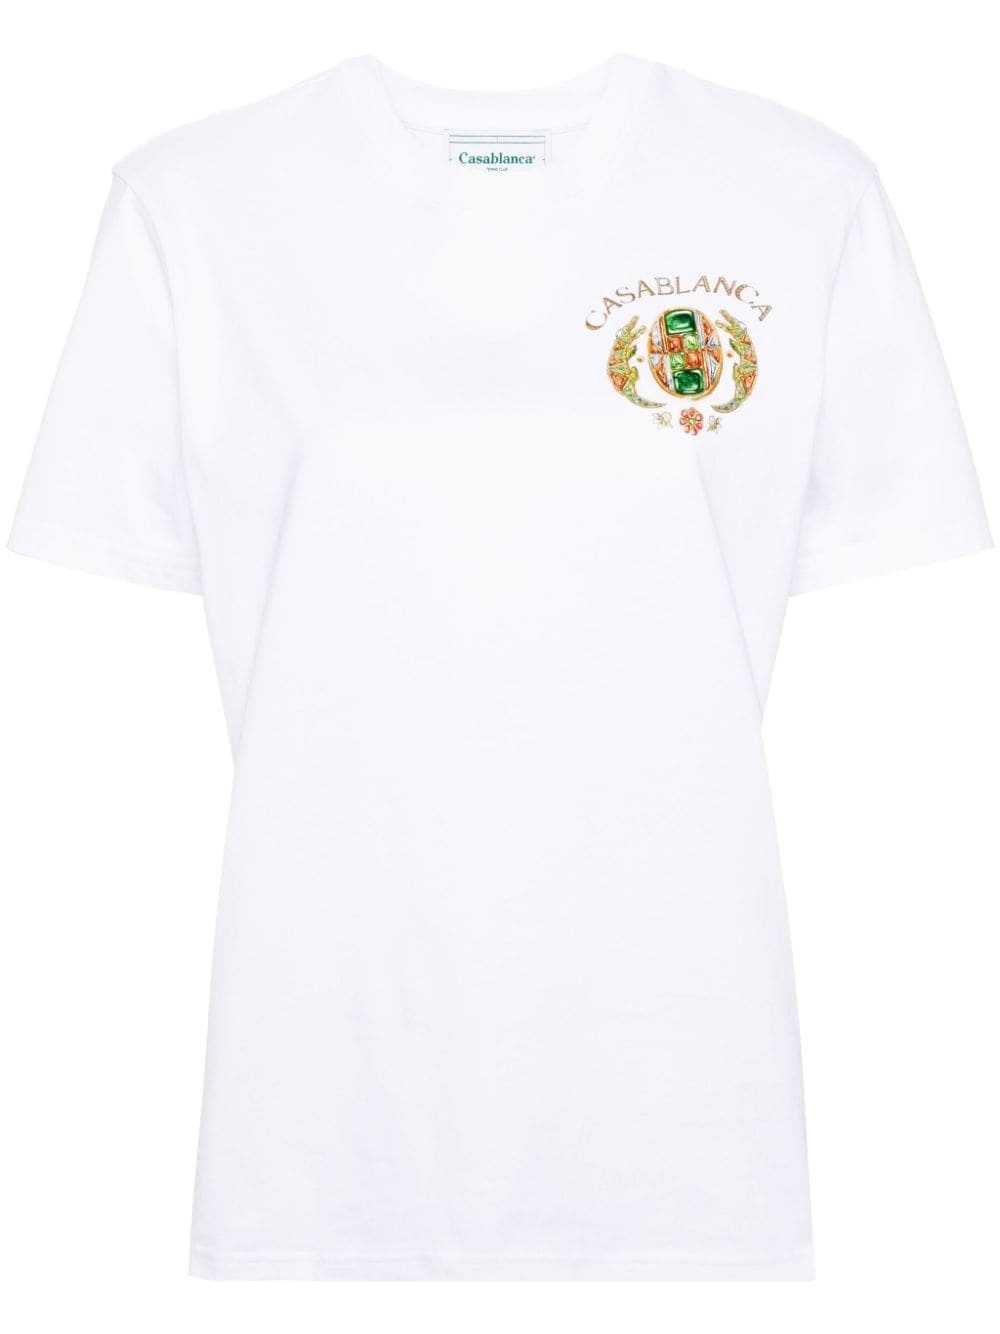 Joyaux D'Afrique Tennis Club cotton T-shirt - 1